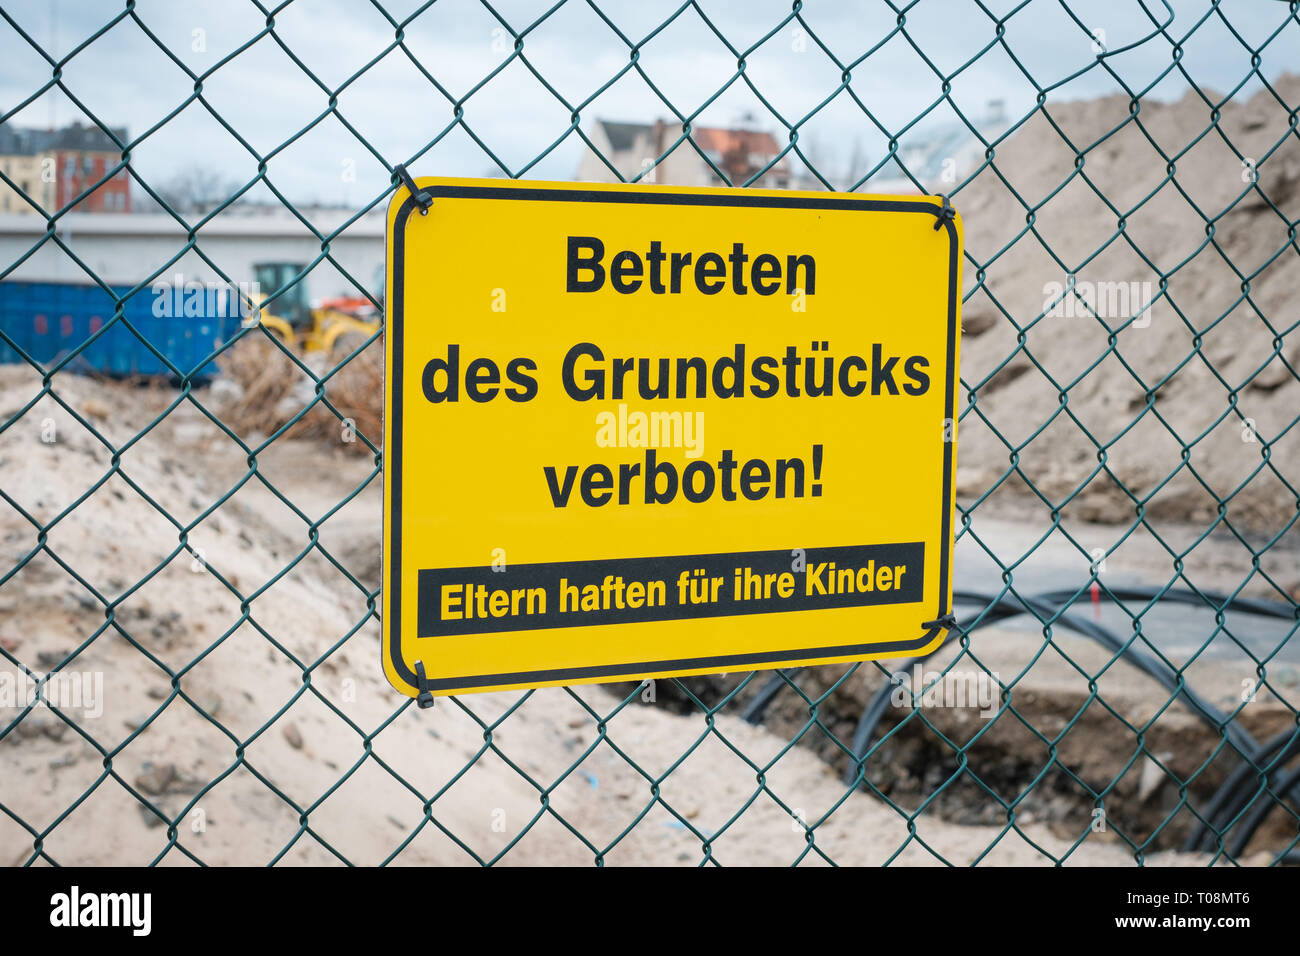 Betreten des Grundstücks verboten ! Eltern haften für ihre Kinder ! gelbes Schild an Zaun von Baustelle. Stock Photo